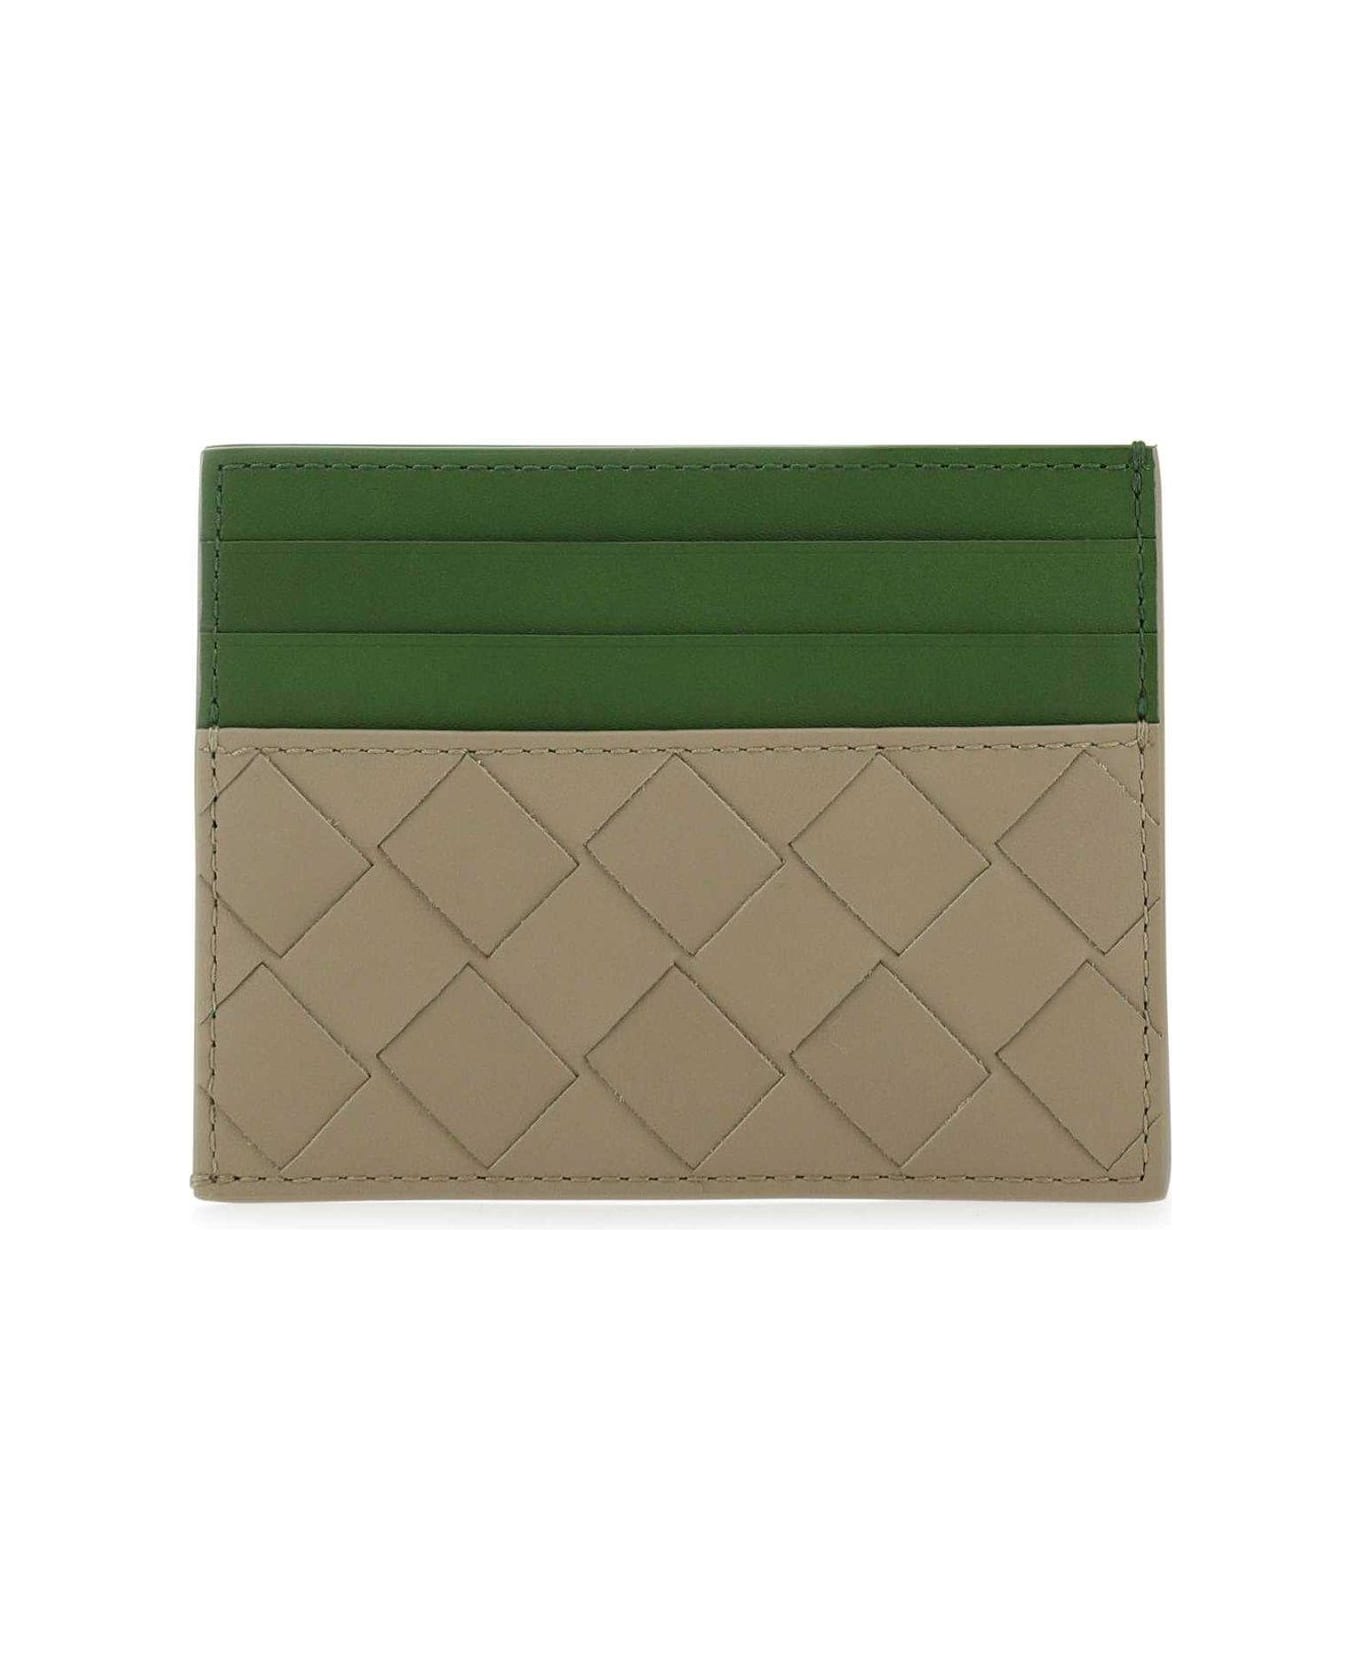 Bottega Veneta Woven Leather Card Holder - Taupe, avocado 財布